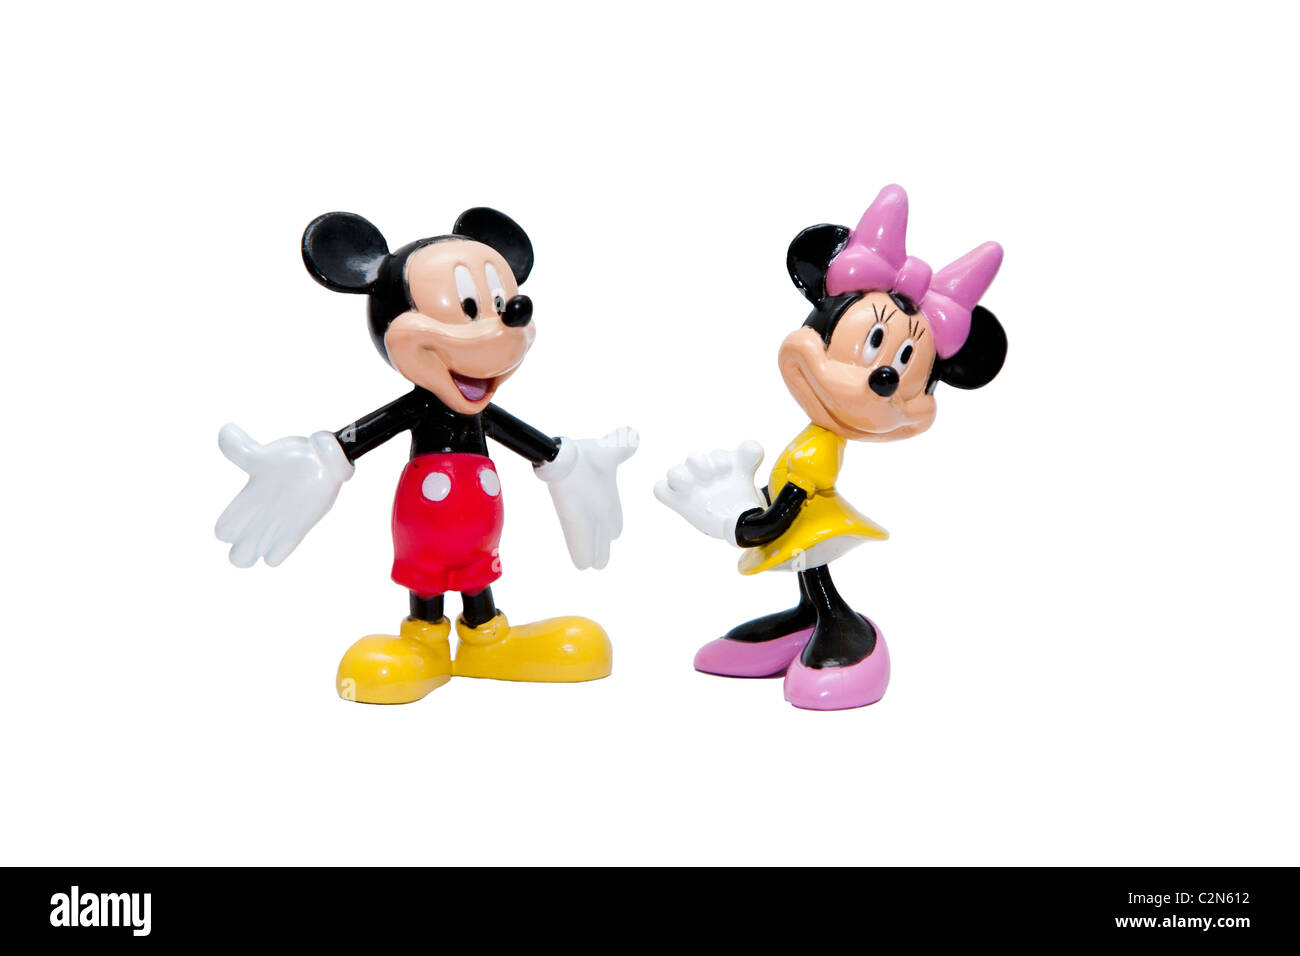 Micky und Minnie Mouse cartoon Puppen von Walt Disney, isoliert. Stockfoto